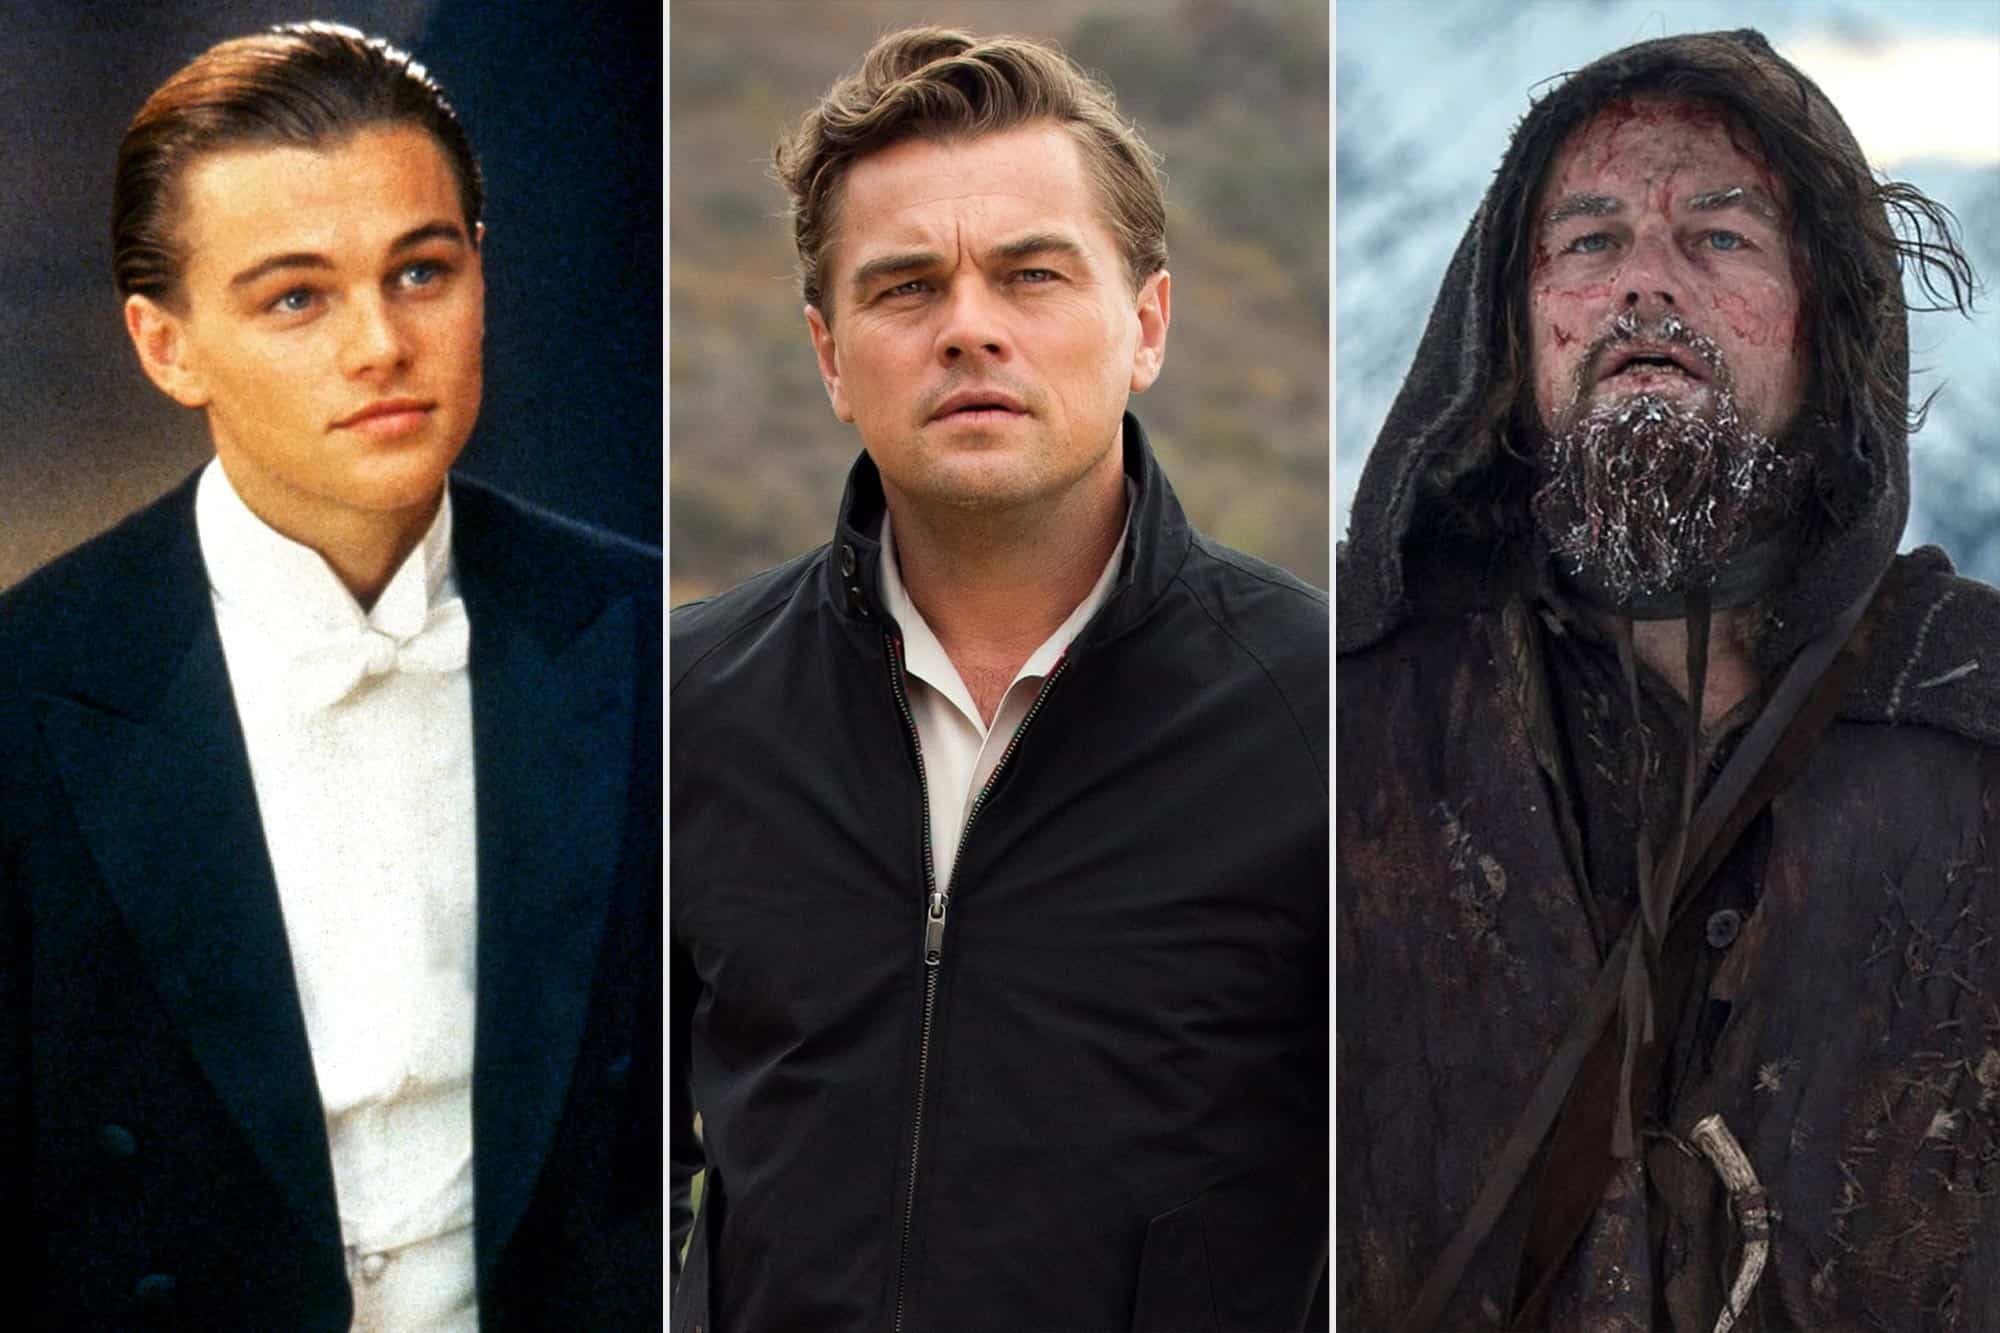 Leonardo DiCaprio And Bar Refaeli Love Affair Revealed